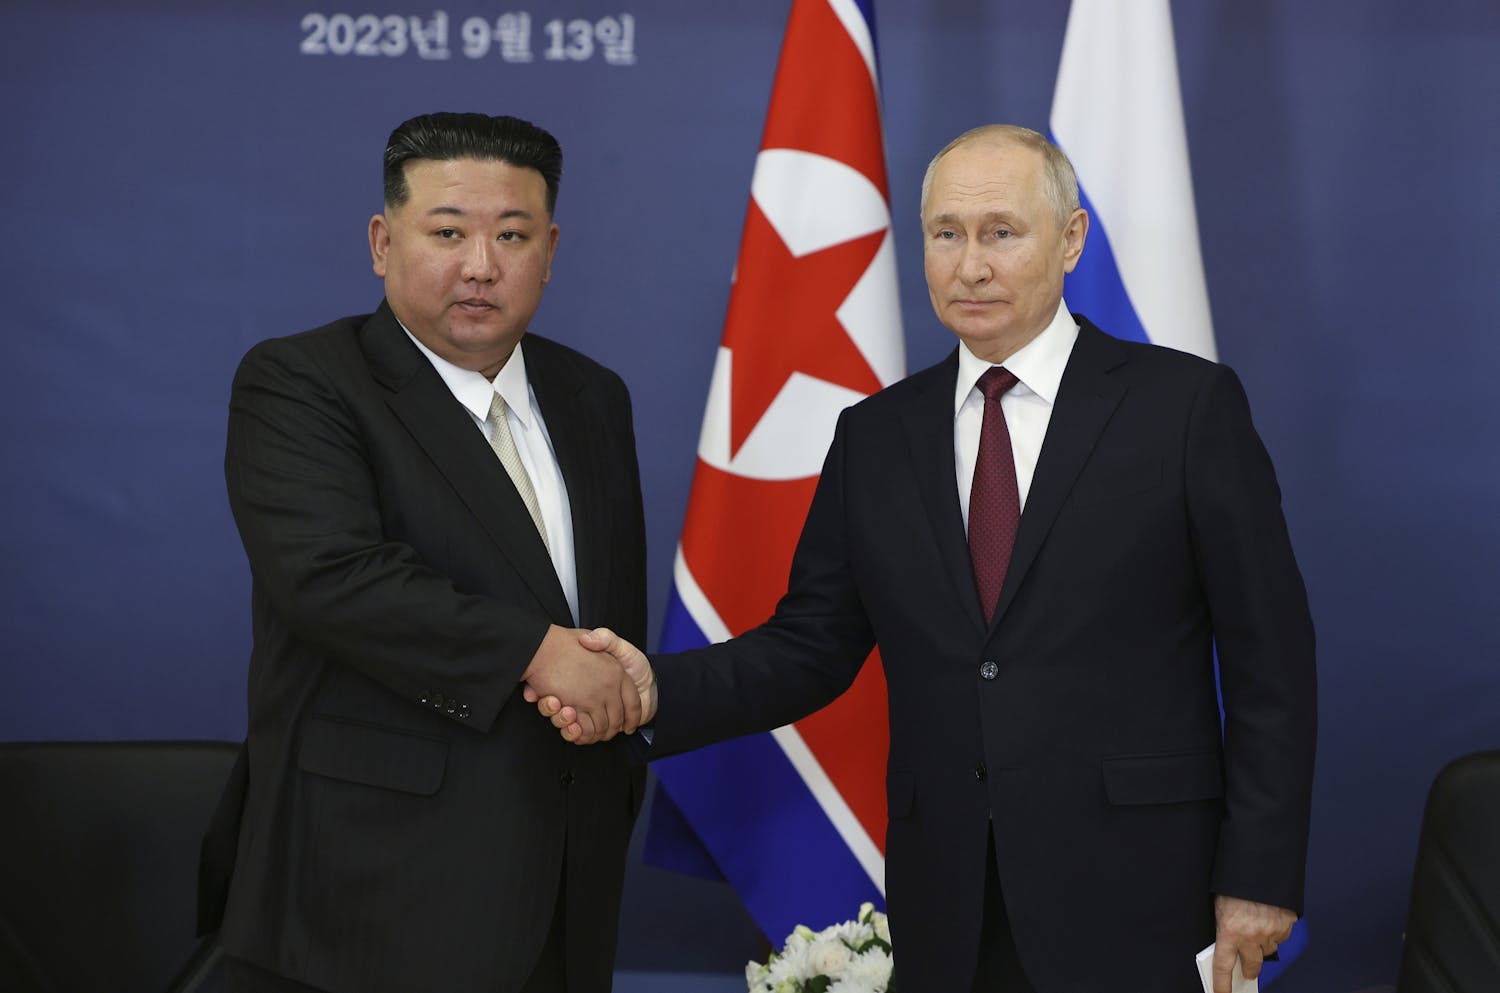 Kunjungan Putin ke Korea Utara merupakan 'bencana bagi Ukraina'